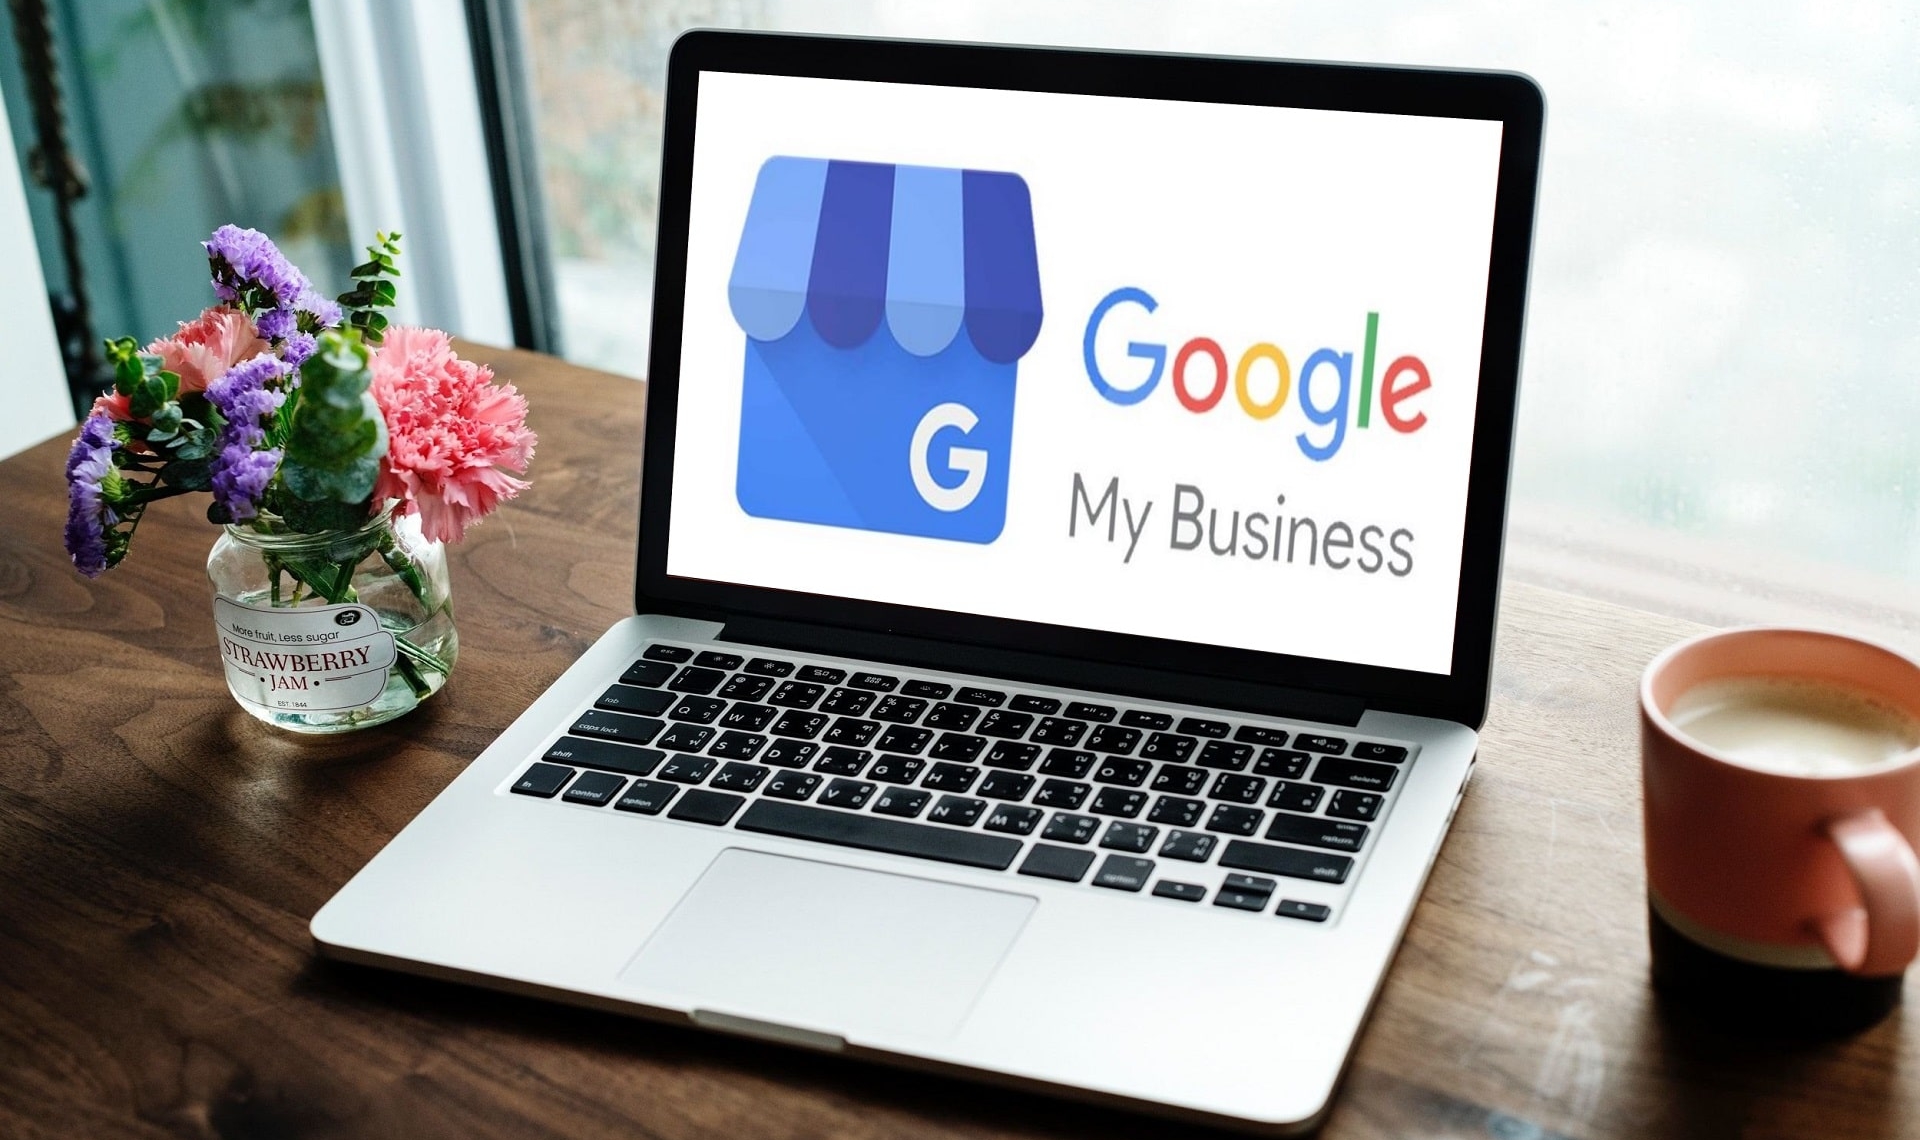 google my business help center